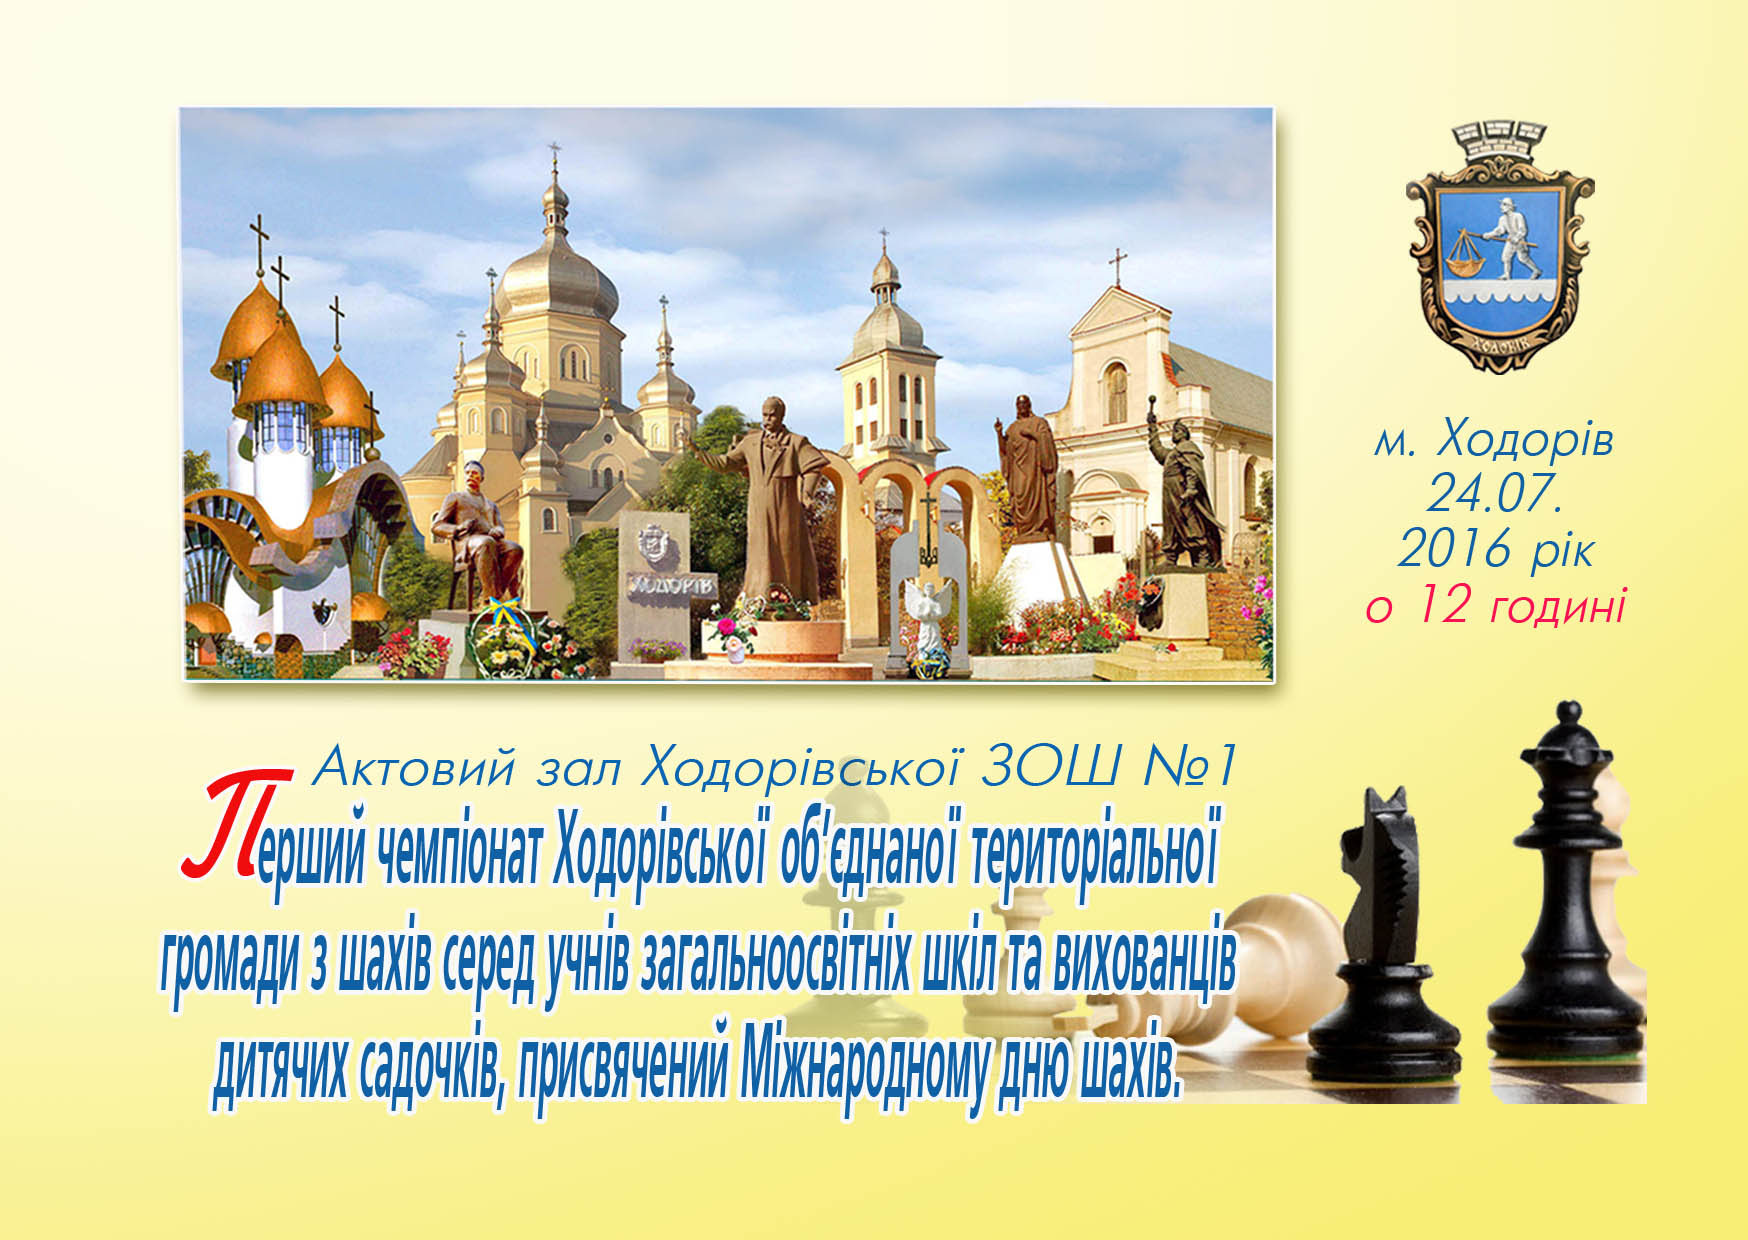 Перший чемпіонат з шахів Ходорівської об’єднаної територіальної громади.